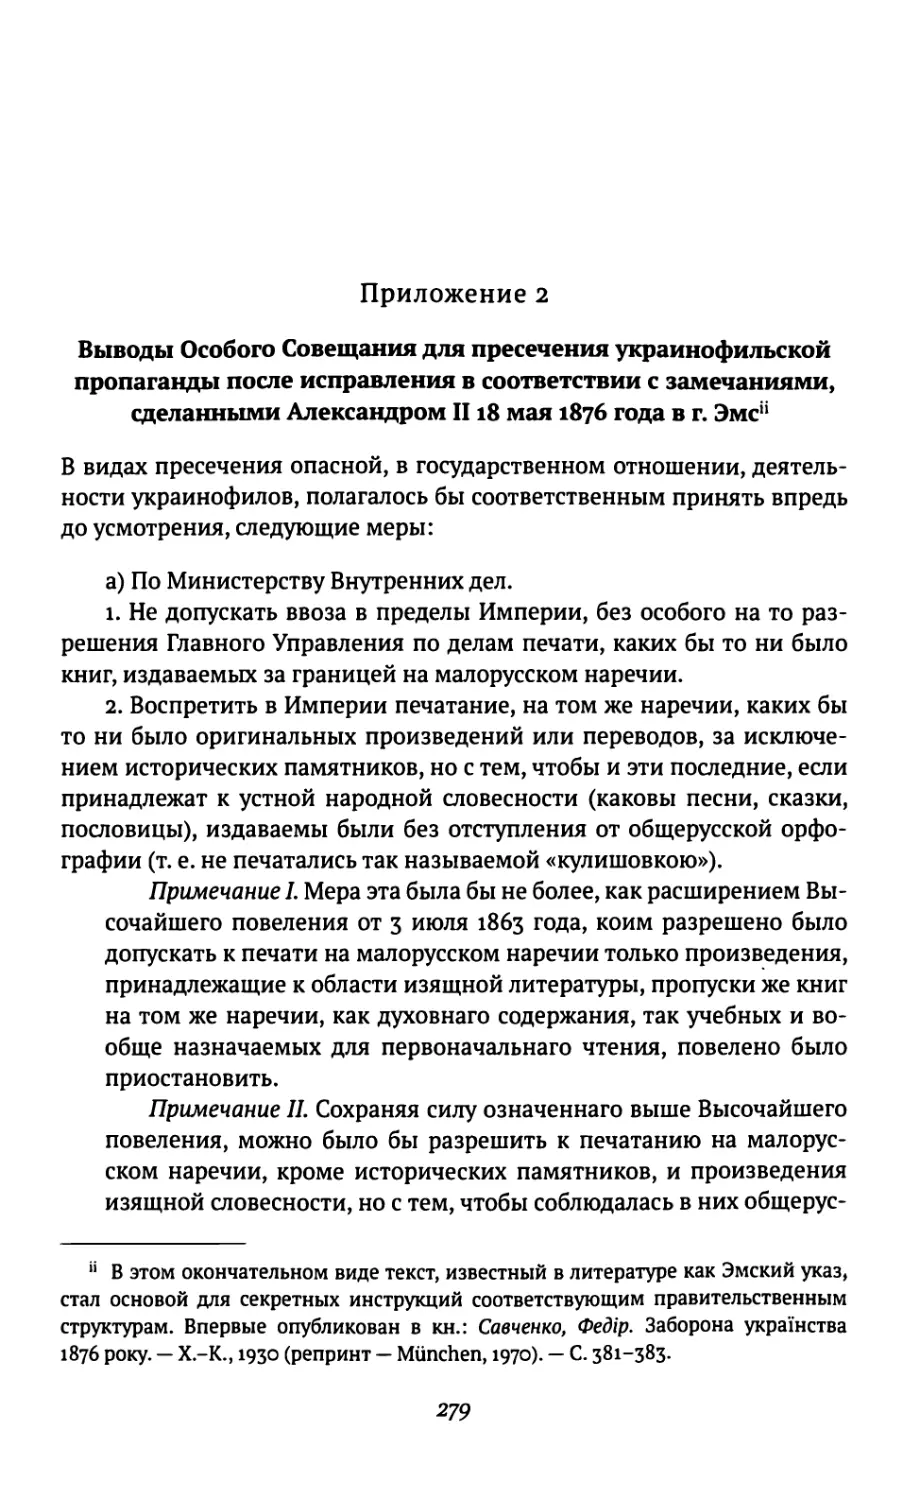 Приложение 2. Выводы Особого Совещания для пресечения украинофильской пропаганды после исправления в соответствии с замечаниями, сделанными Александром II 18 мая 1876 года в г. Эмс